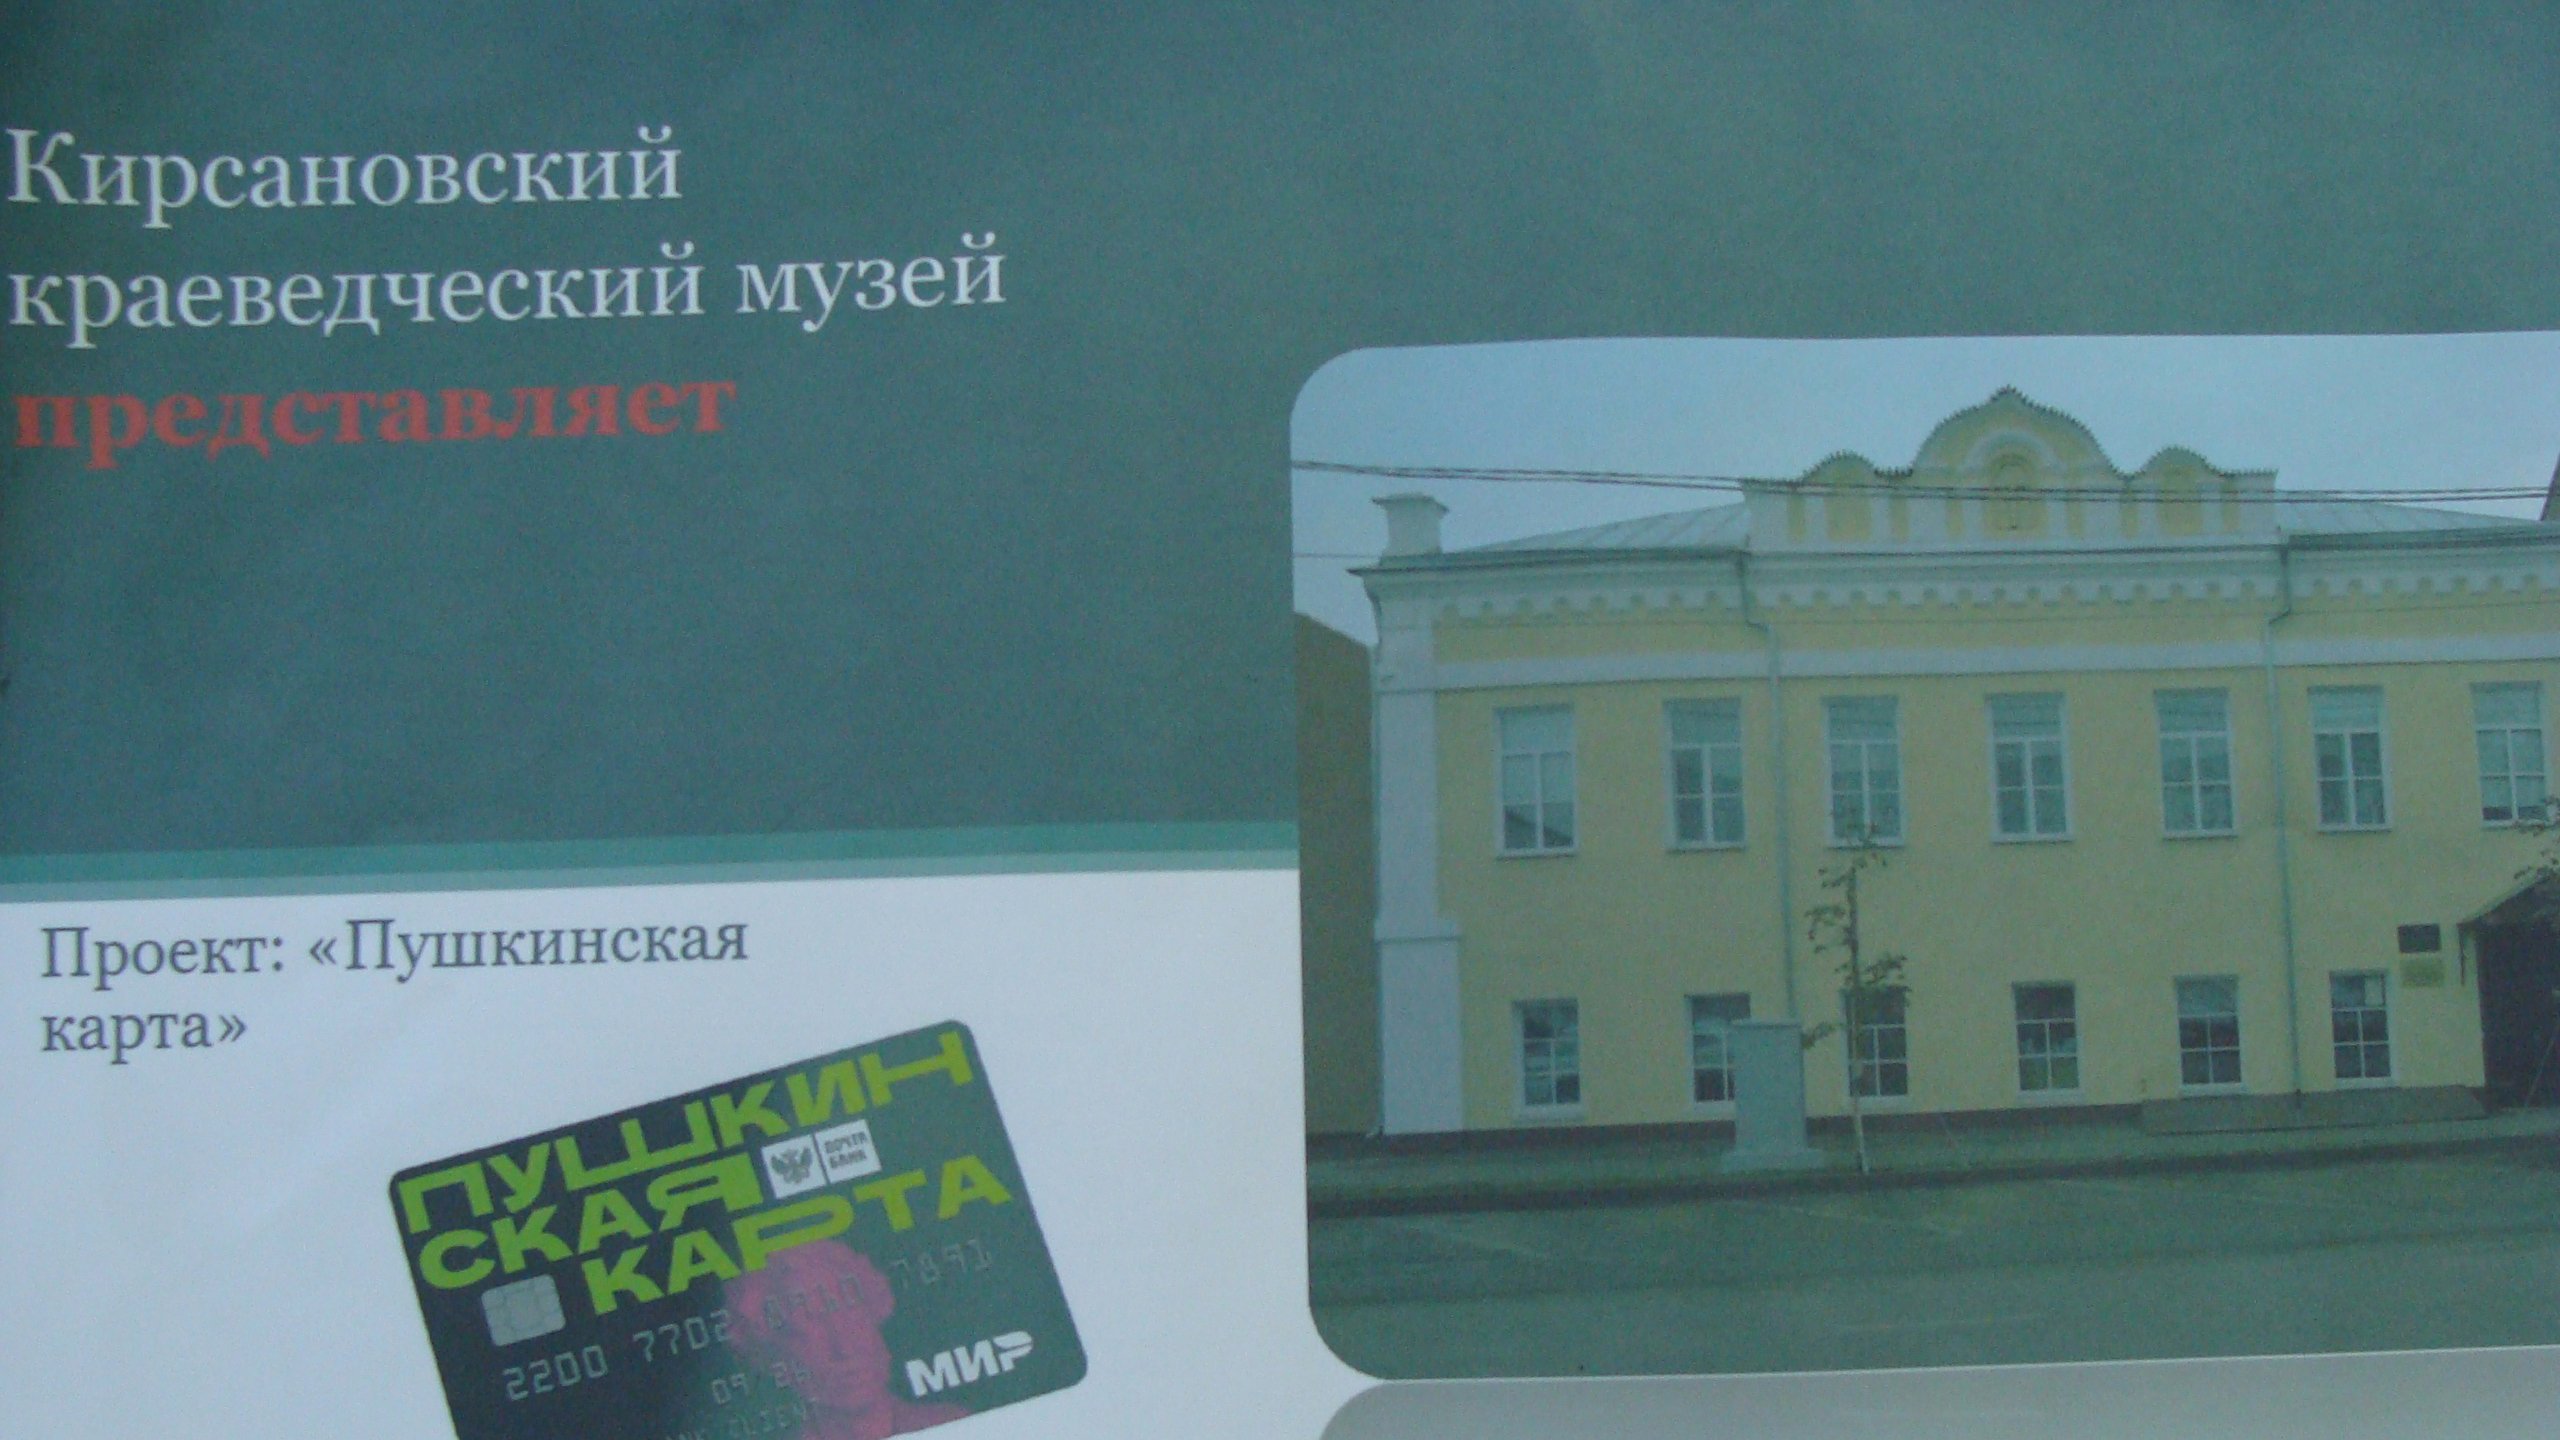 Краеведческий музей Кирсанова и Литературно-музыкальный музей Мичуринска стали участниками программы «Пушкинская карта»